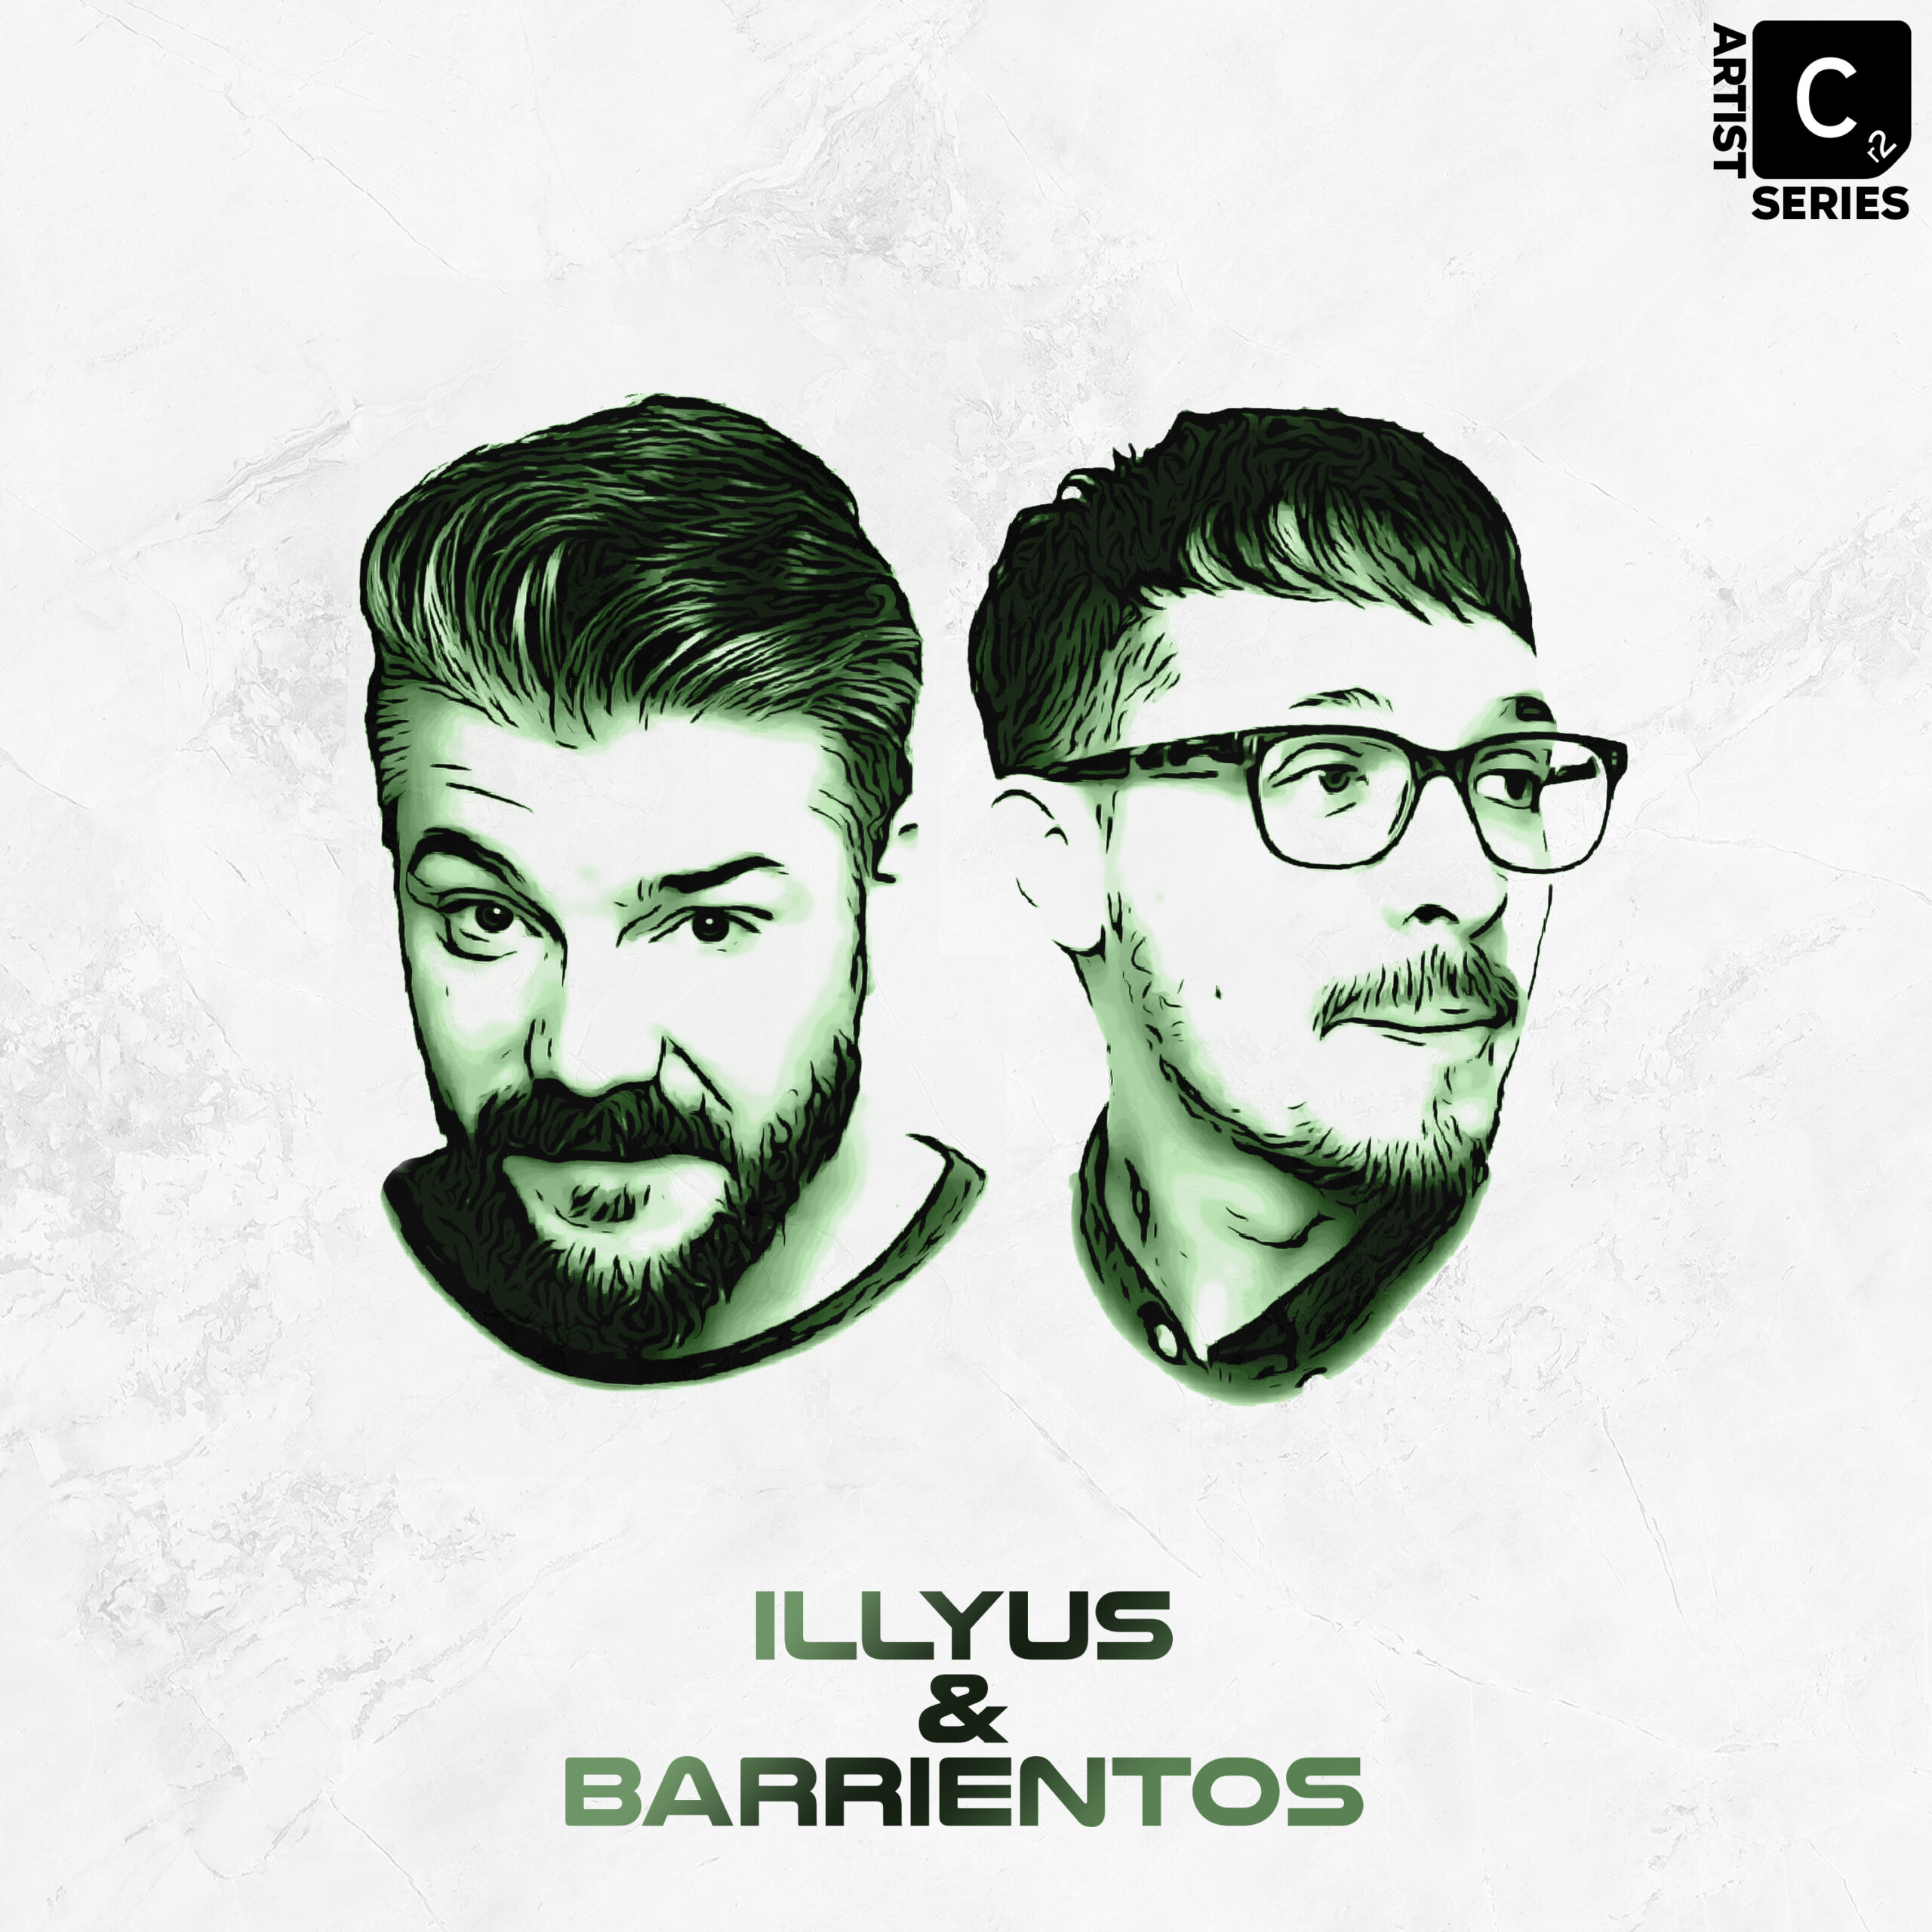 Illyus & Barrientos artwork